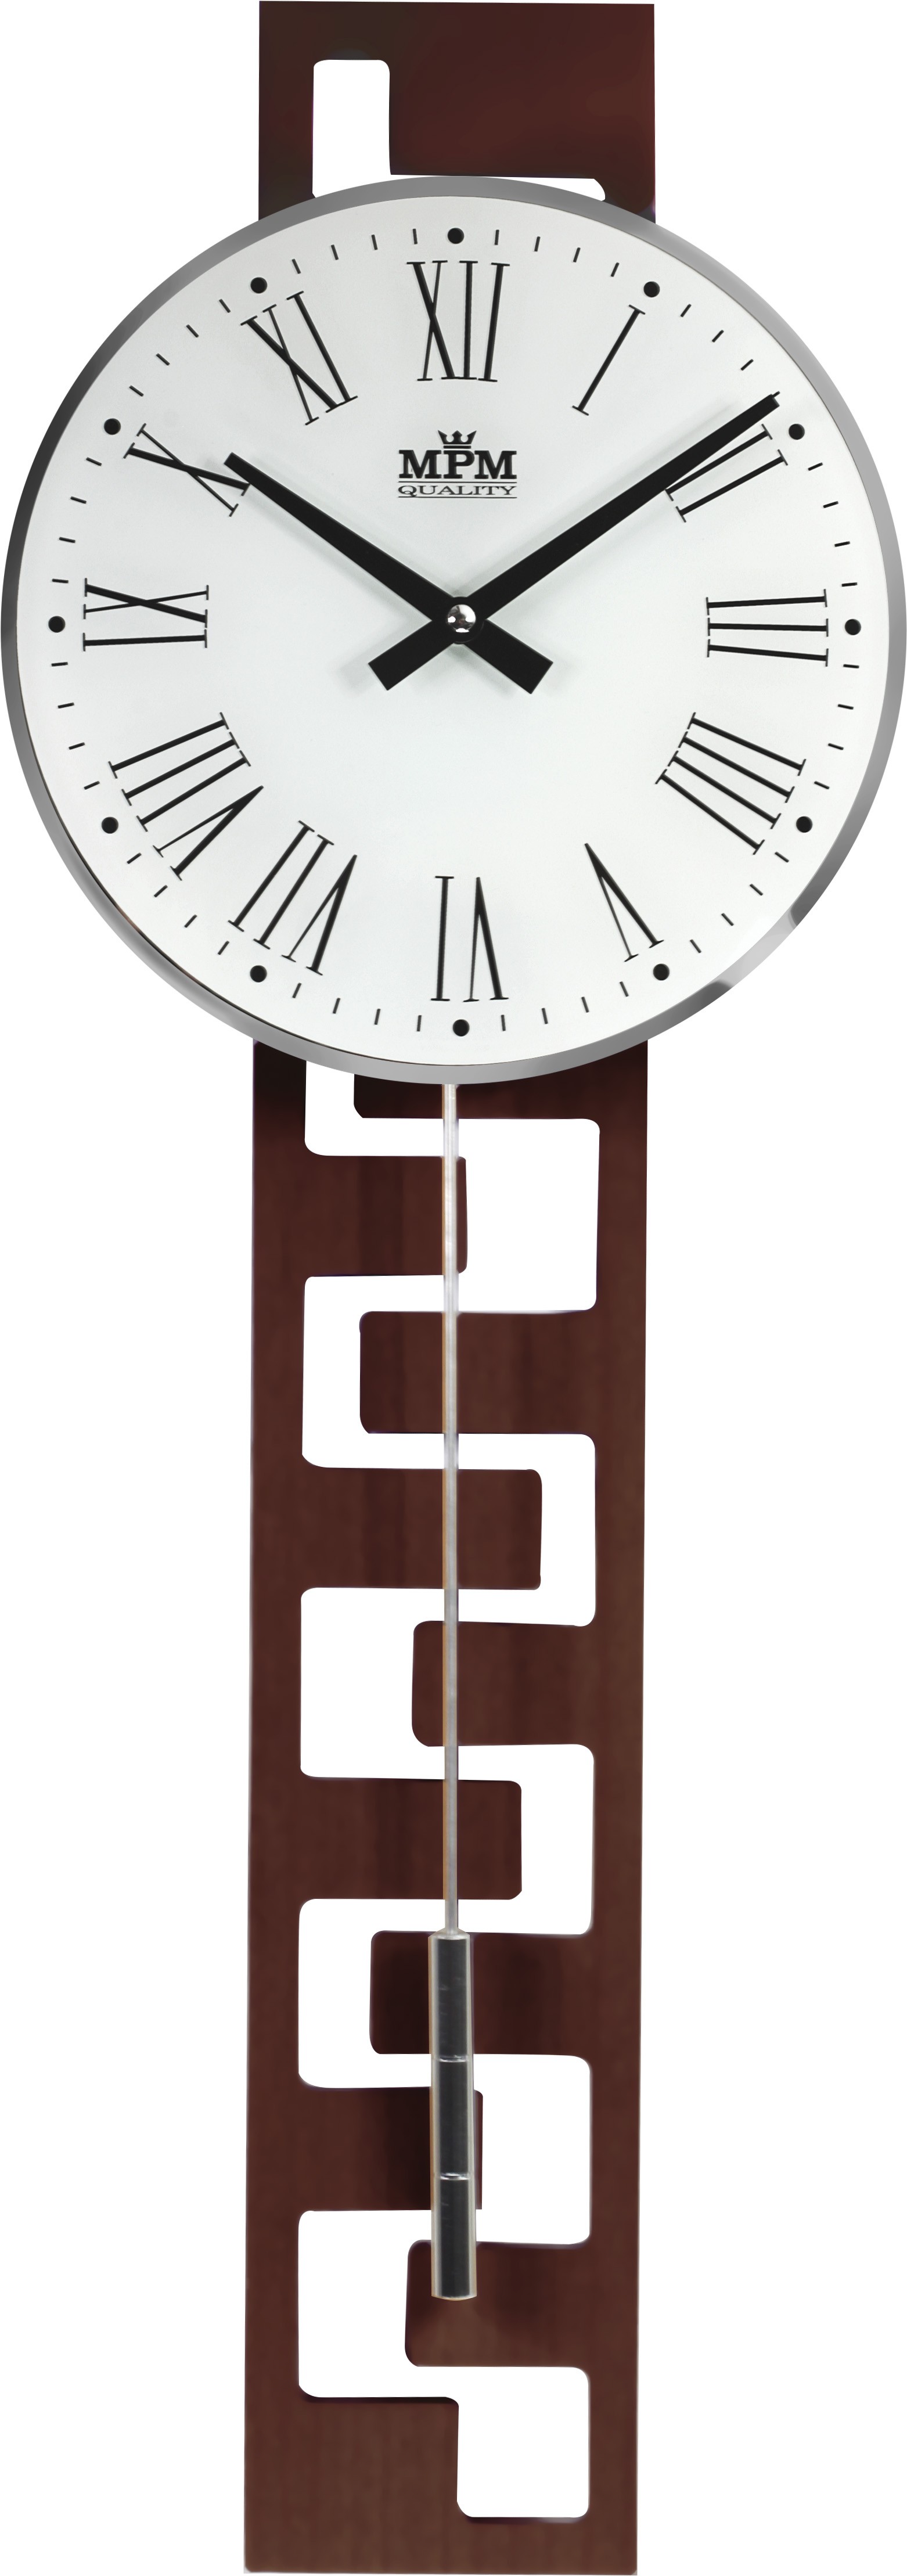 Kyvadlové hodiny MPM 3186.54, drevo, 71cm 